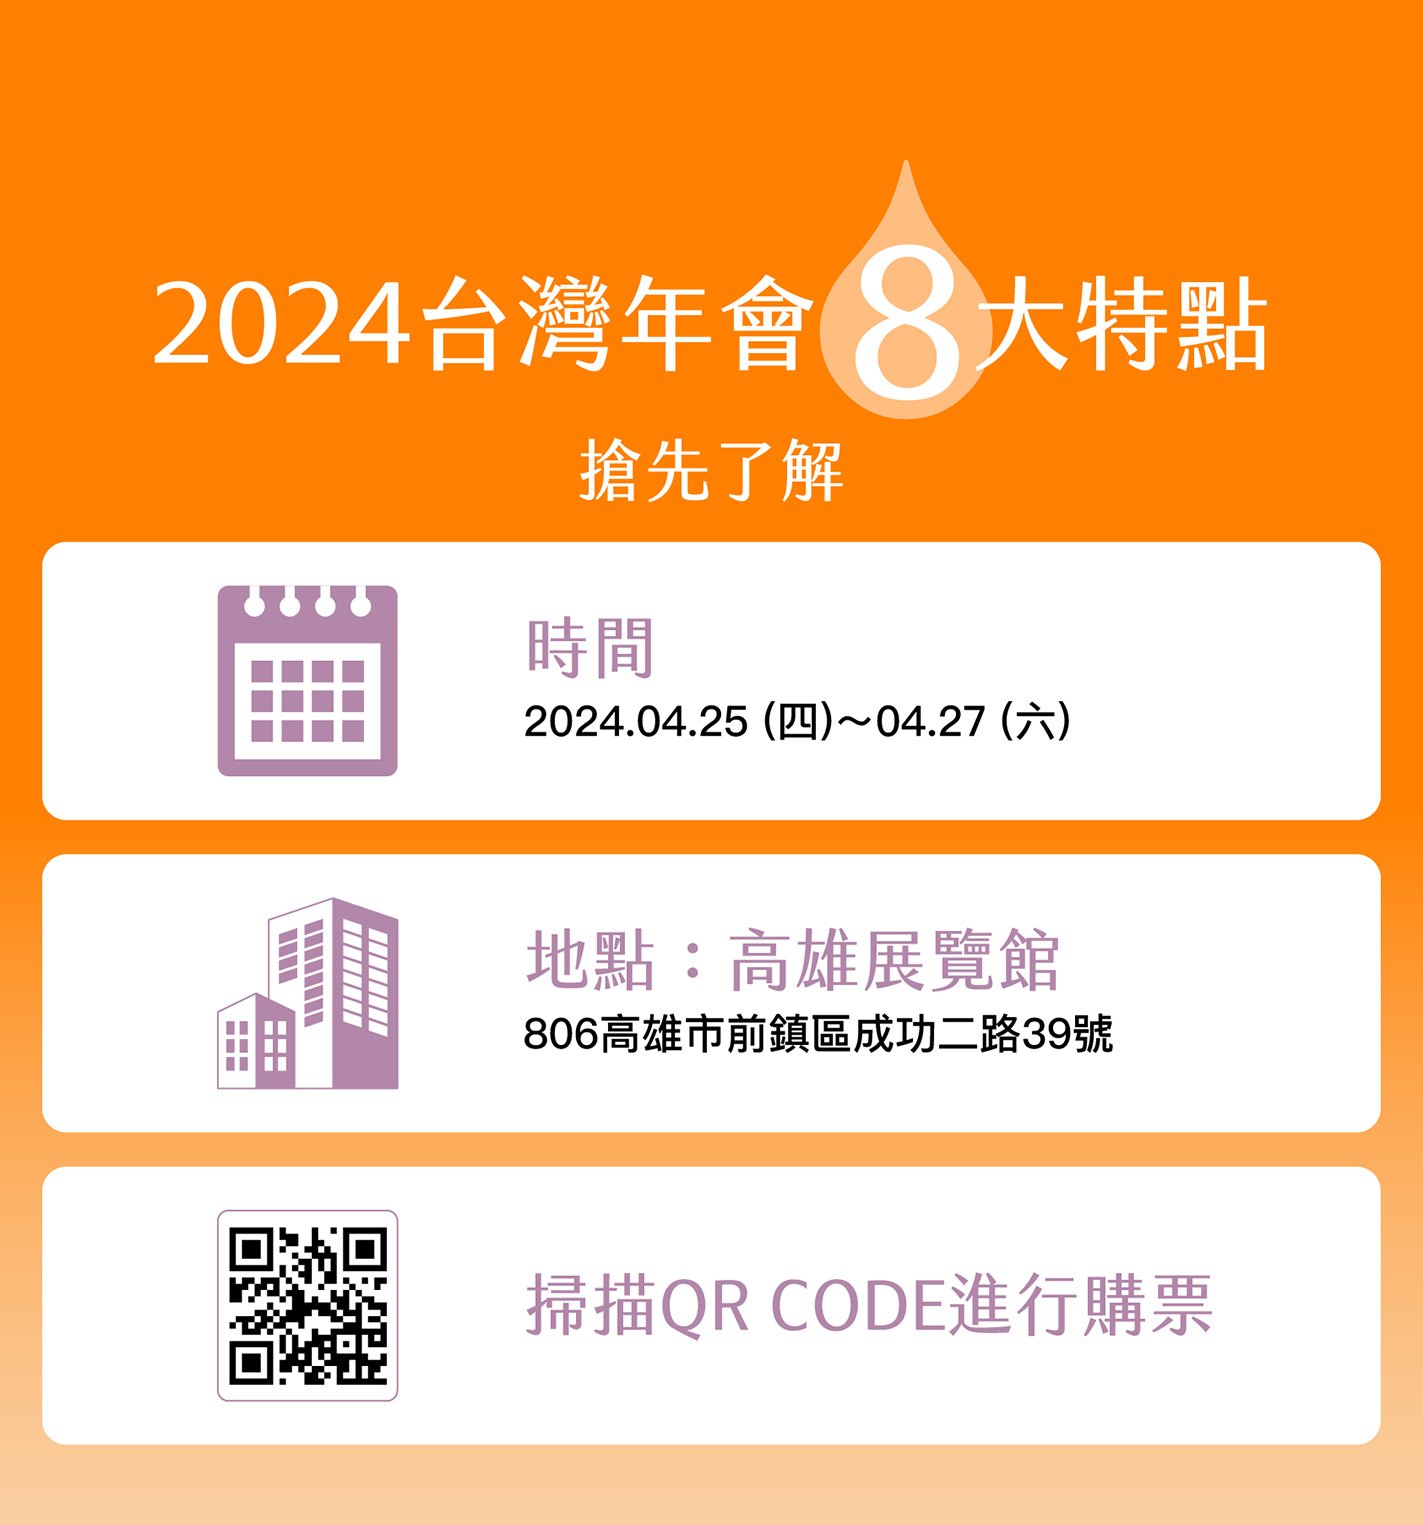 2024 國際精油研討會暨台灣年會8大特點